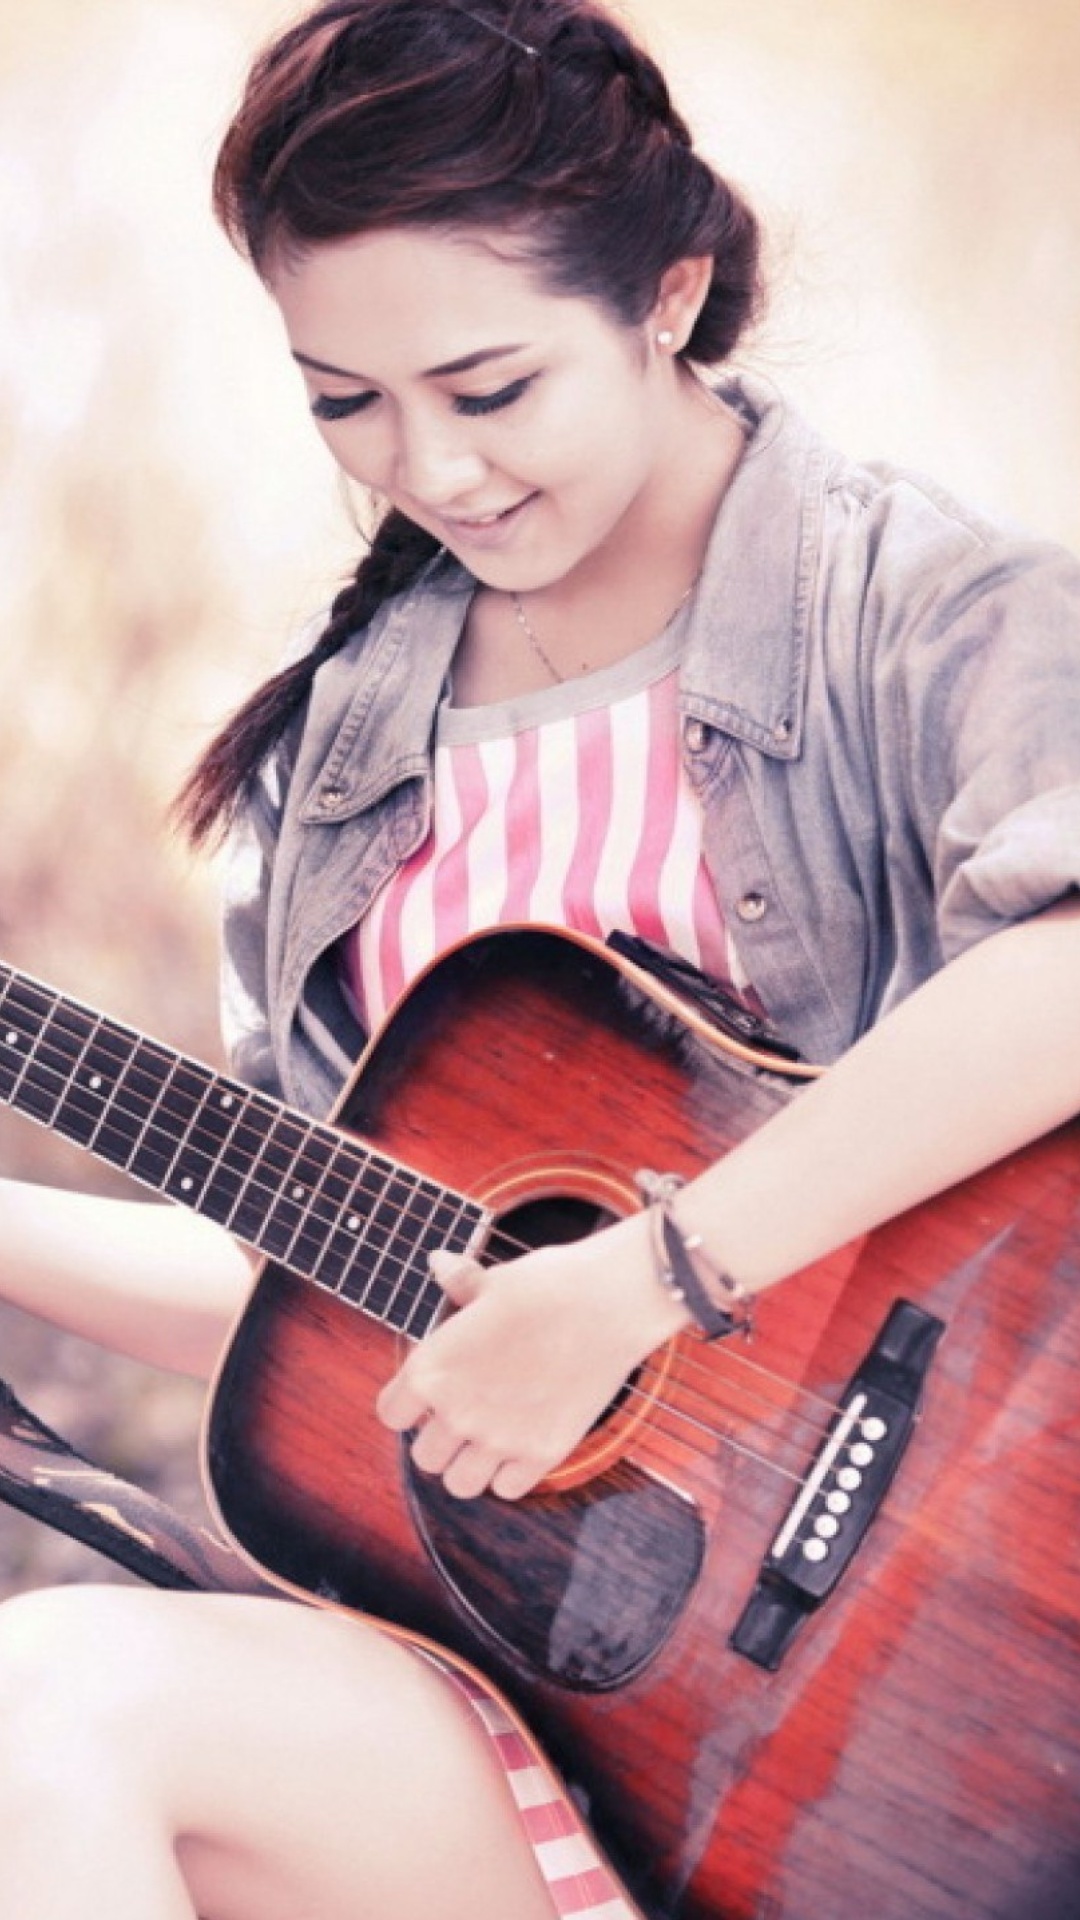 Обои Chinese girl with guitar 1080x1920